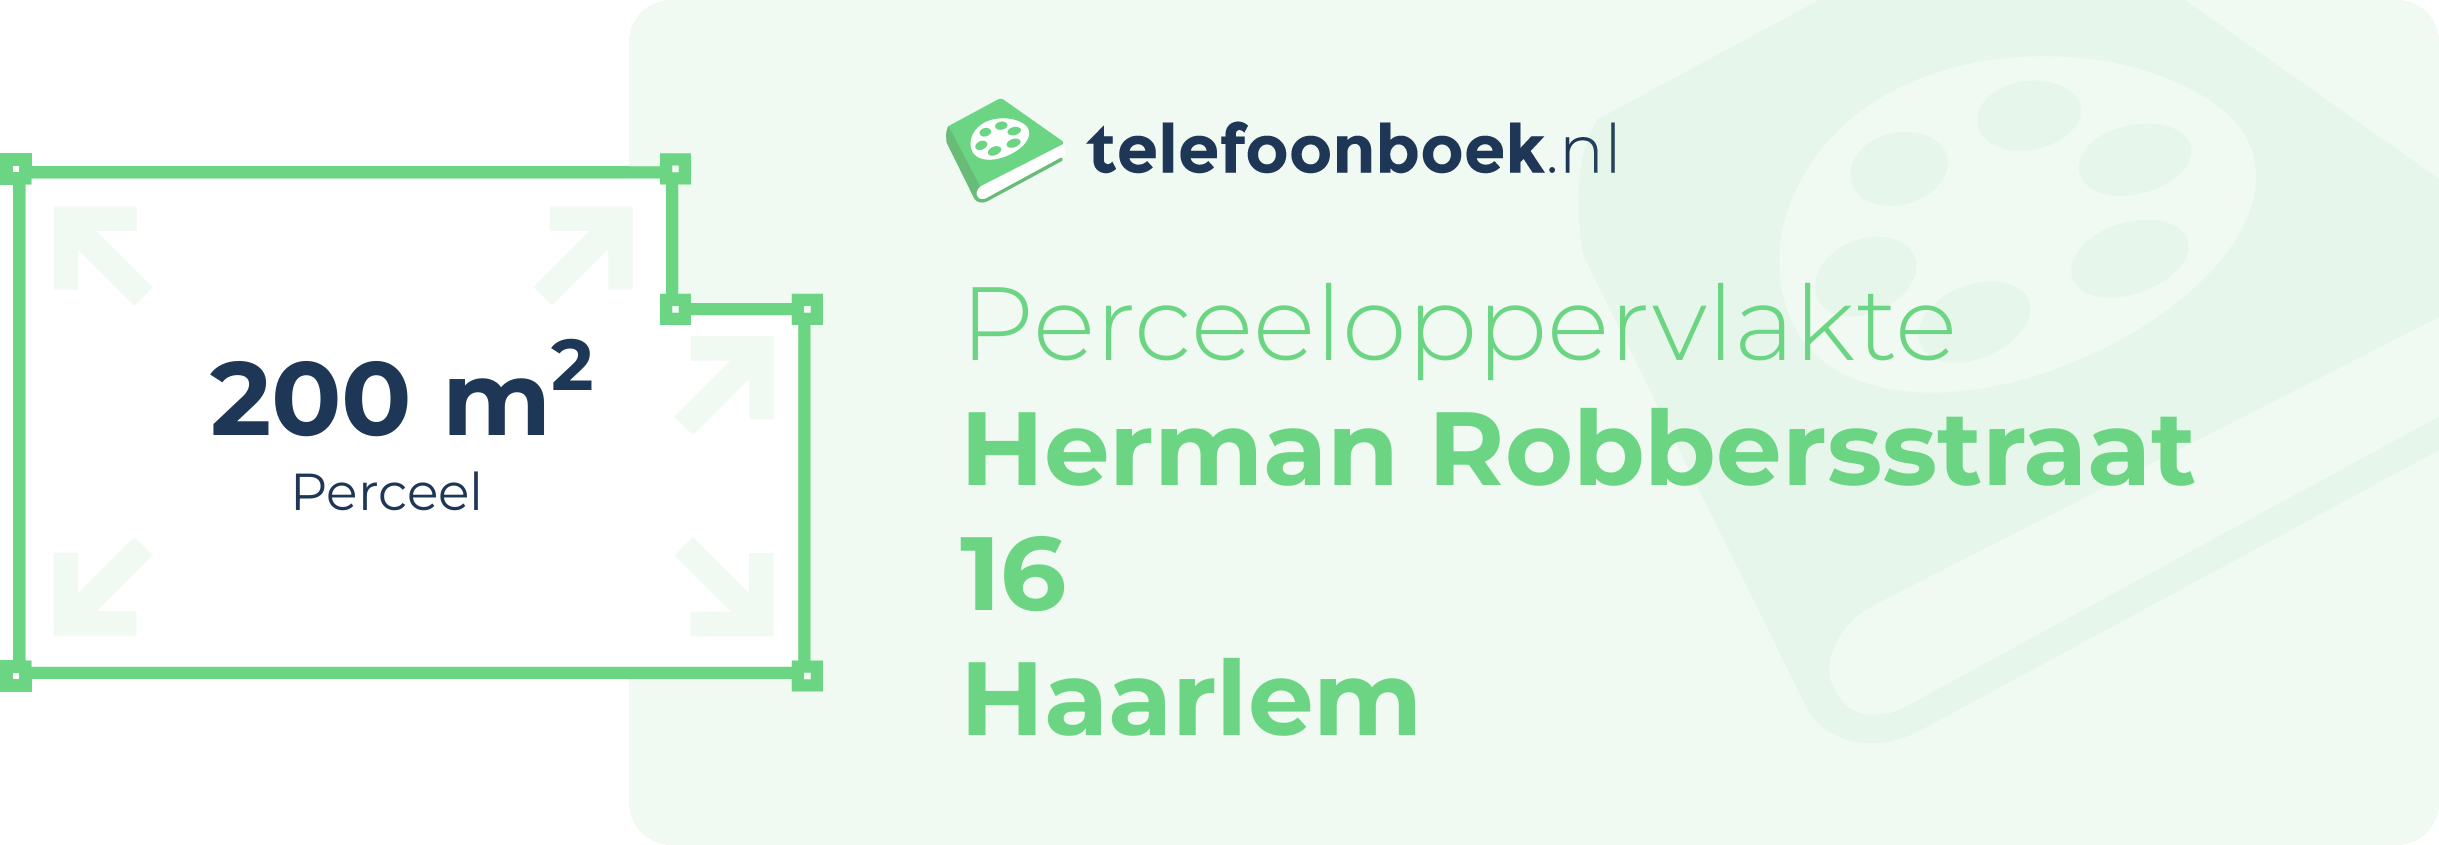 Perceeloppervlakte Herman Robbersstraat 16 Haarlem